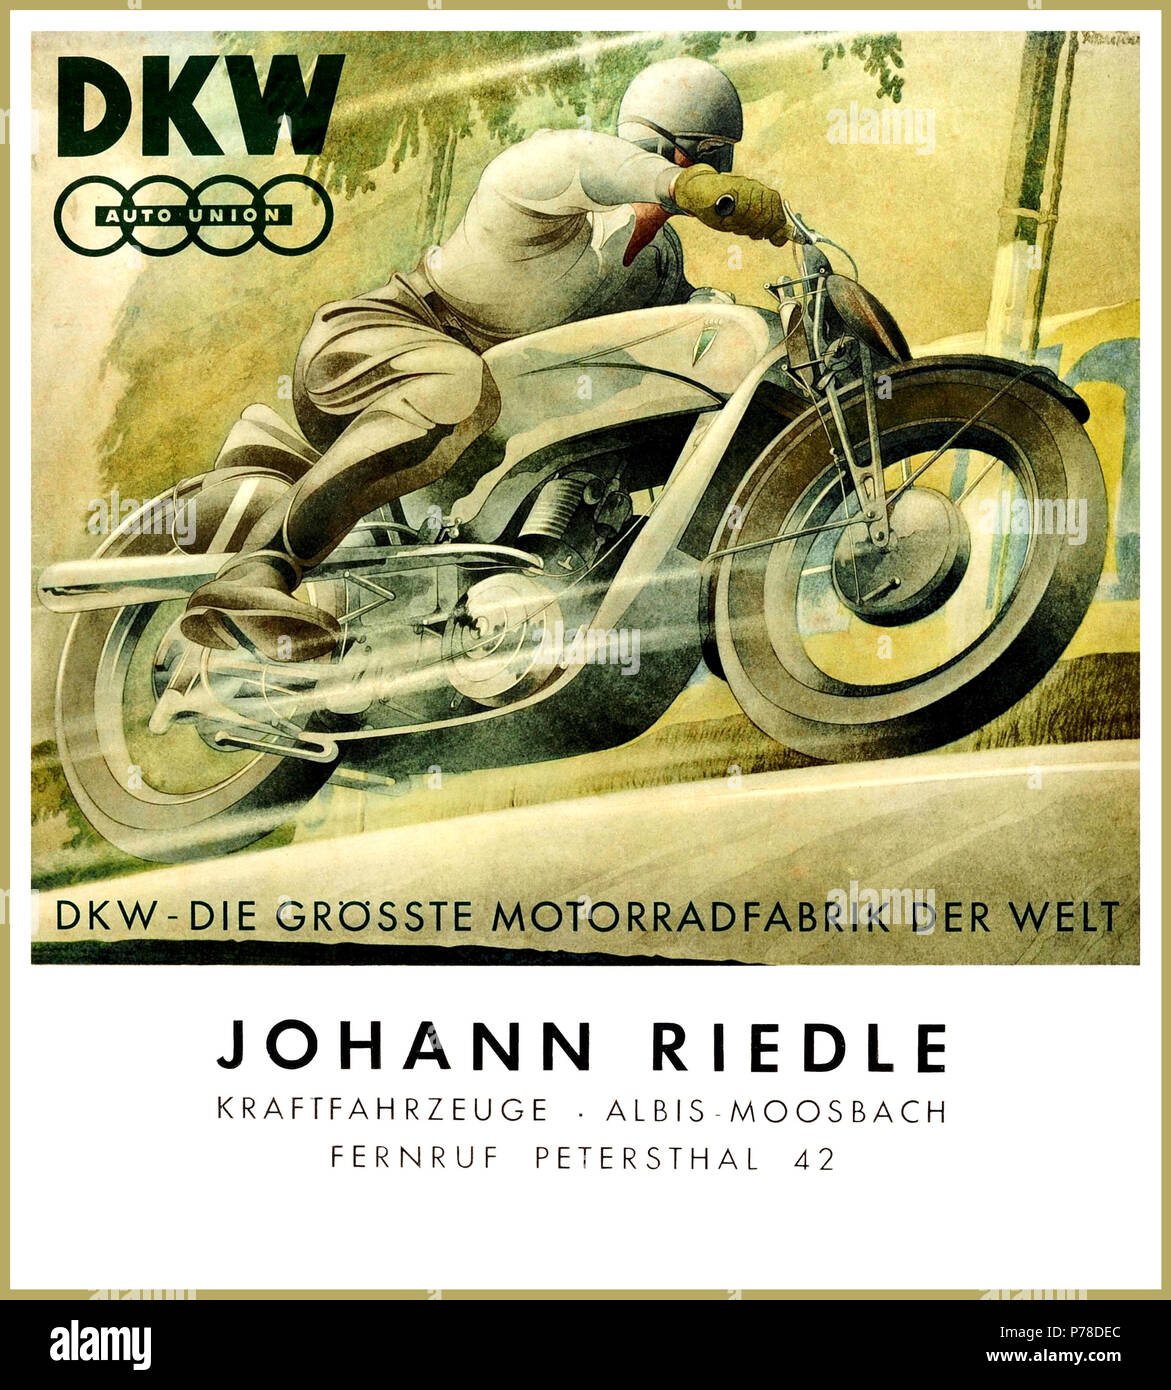 Vintage originale degli anni trenta tedesco Poster pubblicitario per la DKW Auto Union motocicli, Foto Stock